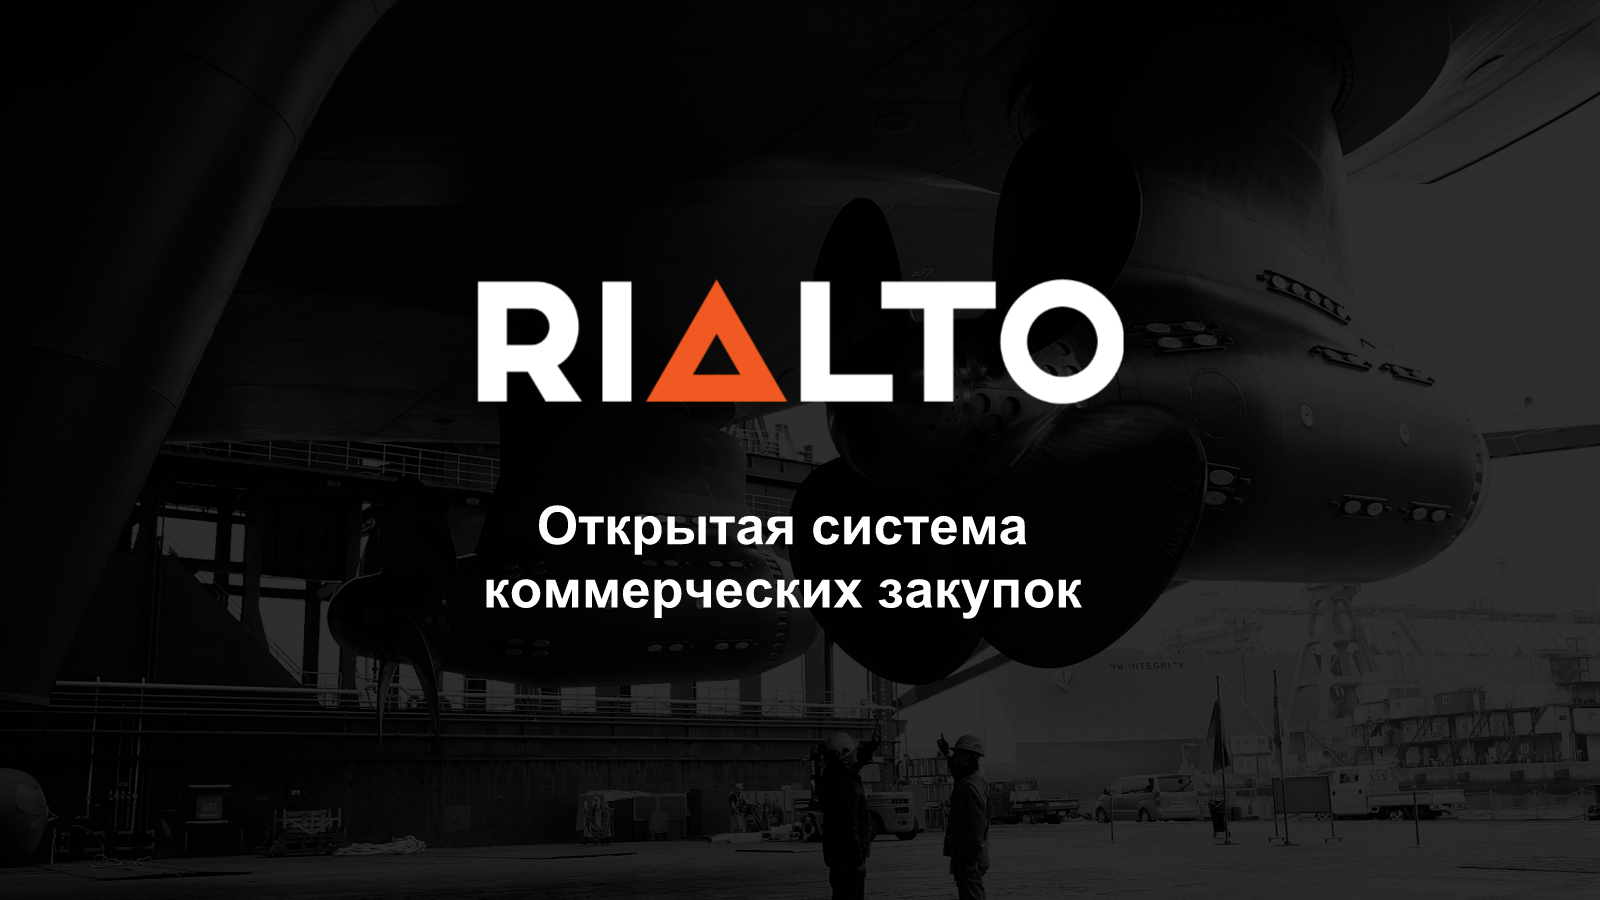 Сеть успешно испытала инновационную открытую систему коммерческих закупок RIALTO